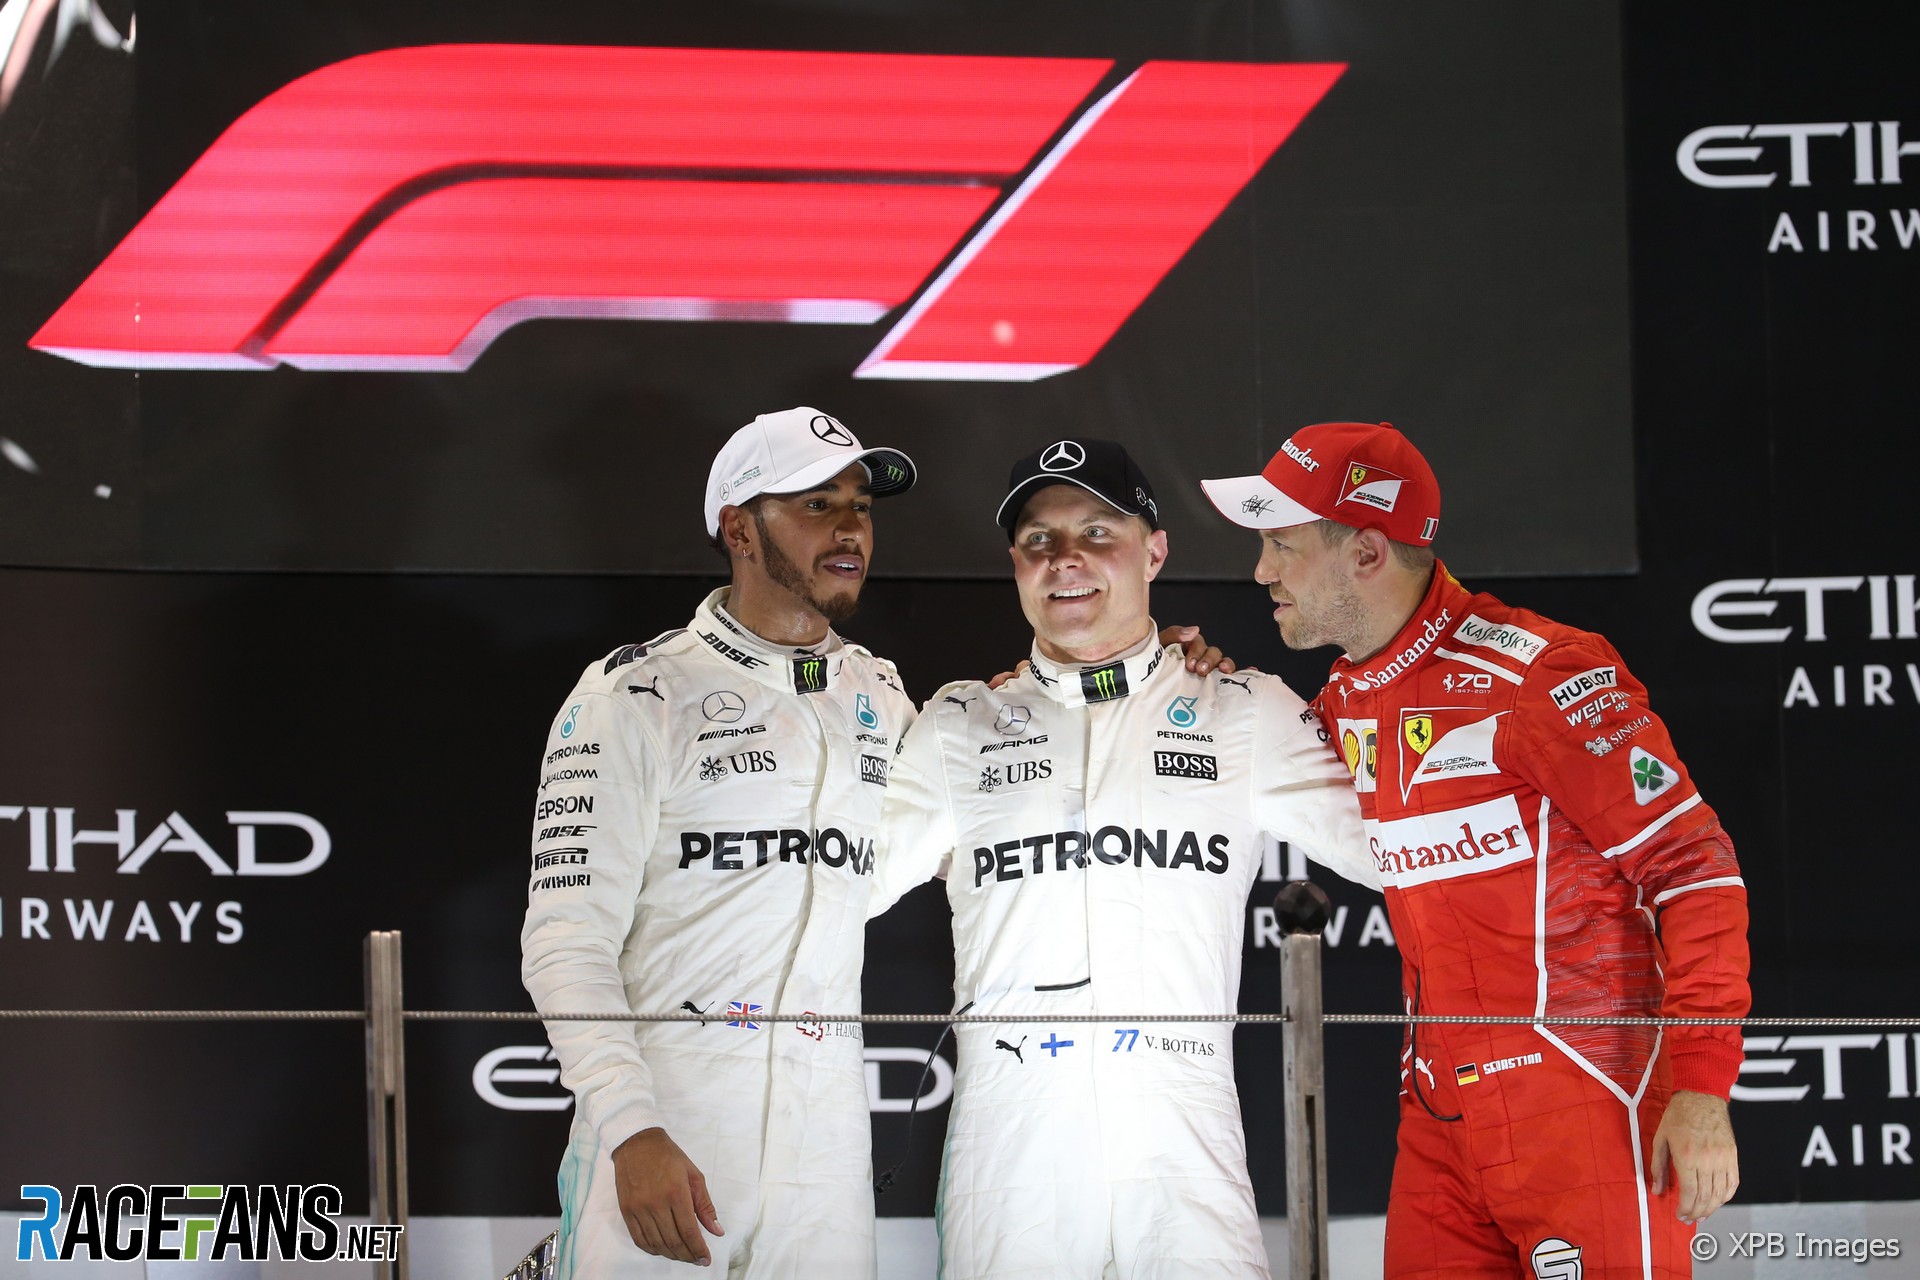 CEO Ferrari Vigna “tidak puas dengan posisi kedua” di tengah rumor tentang Binotto · RaceFans